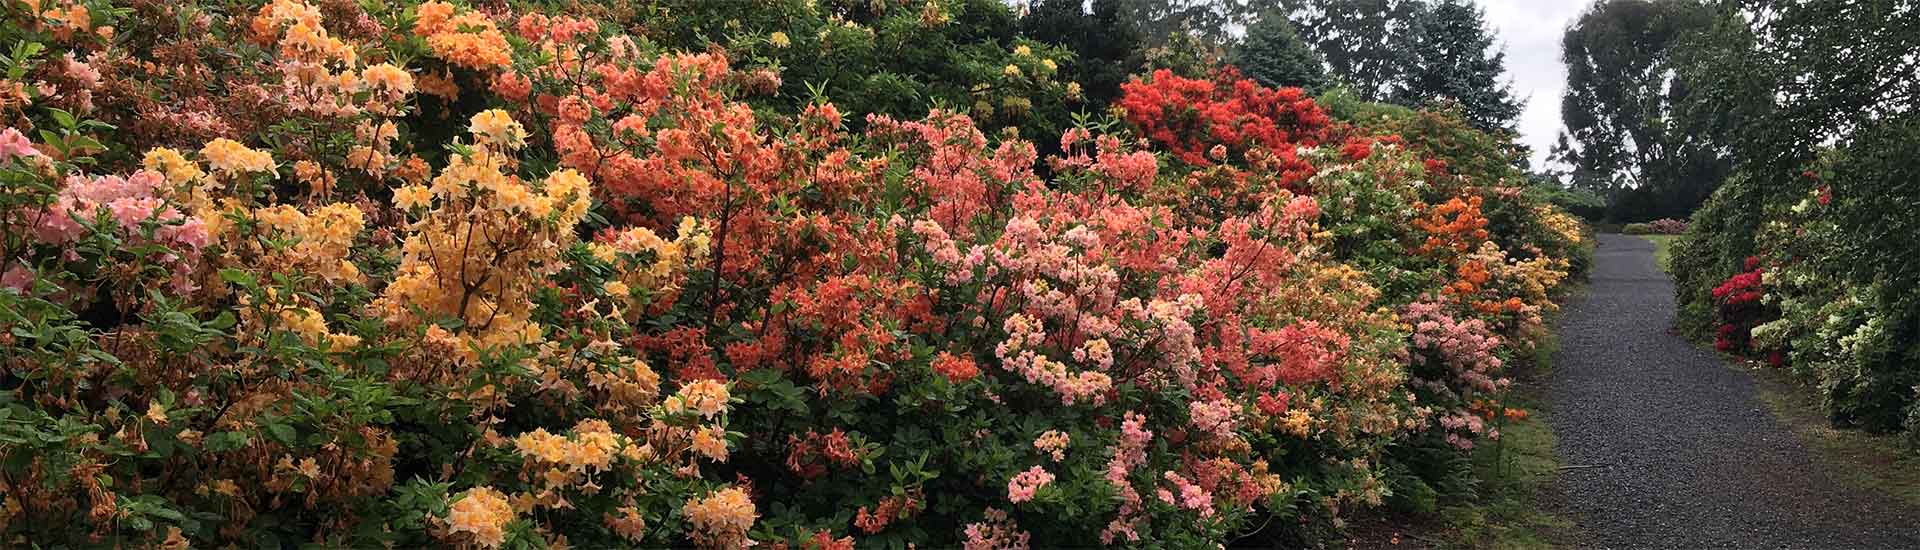 Dandenong Ranges Botanic Garden ( formally the "National Rhododendron Garden" ) | November